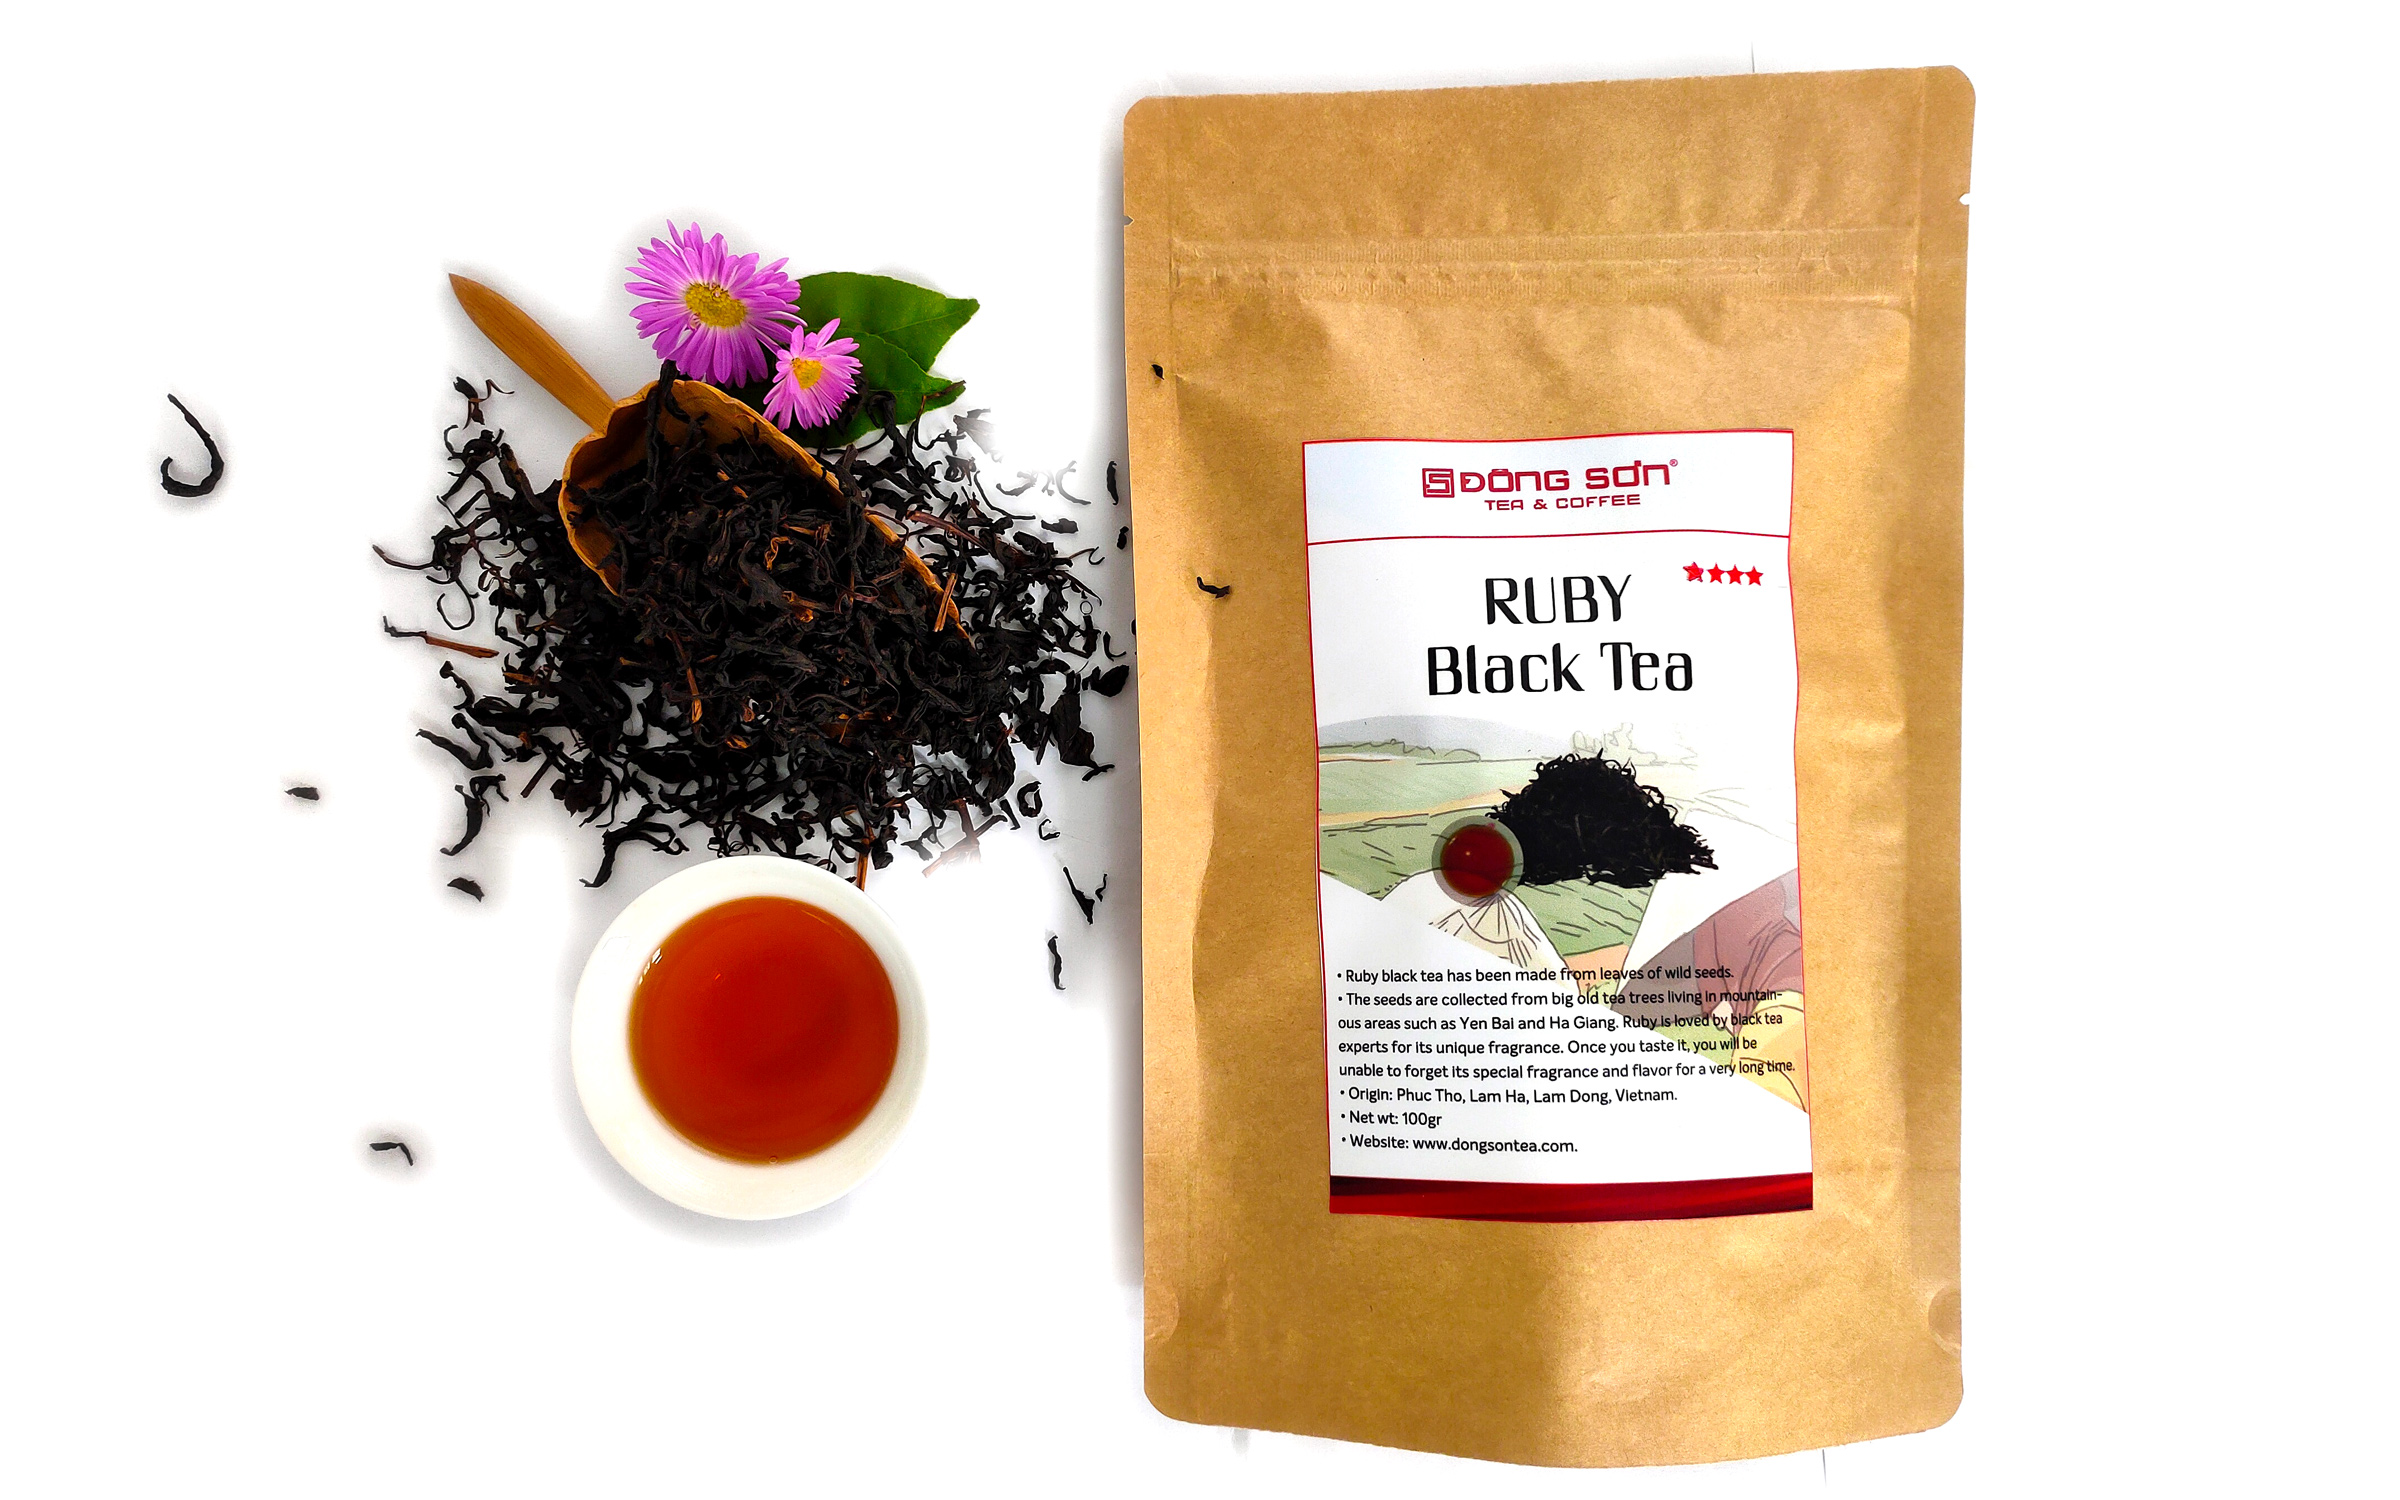 Ruby Black Tea 4 stars